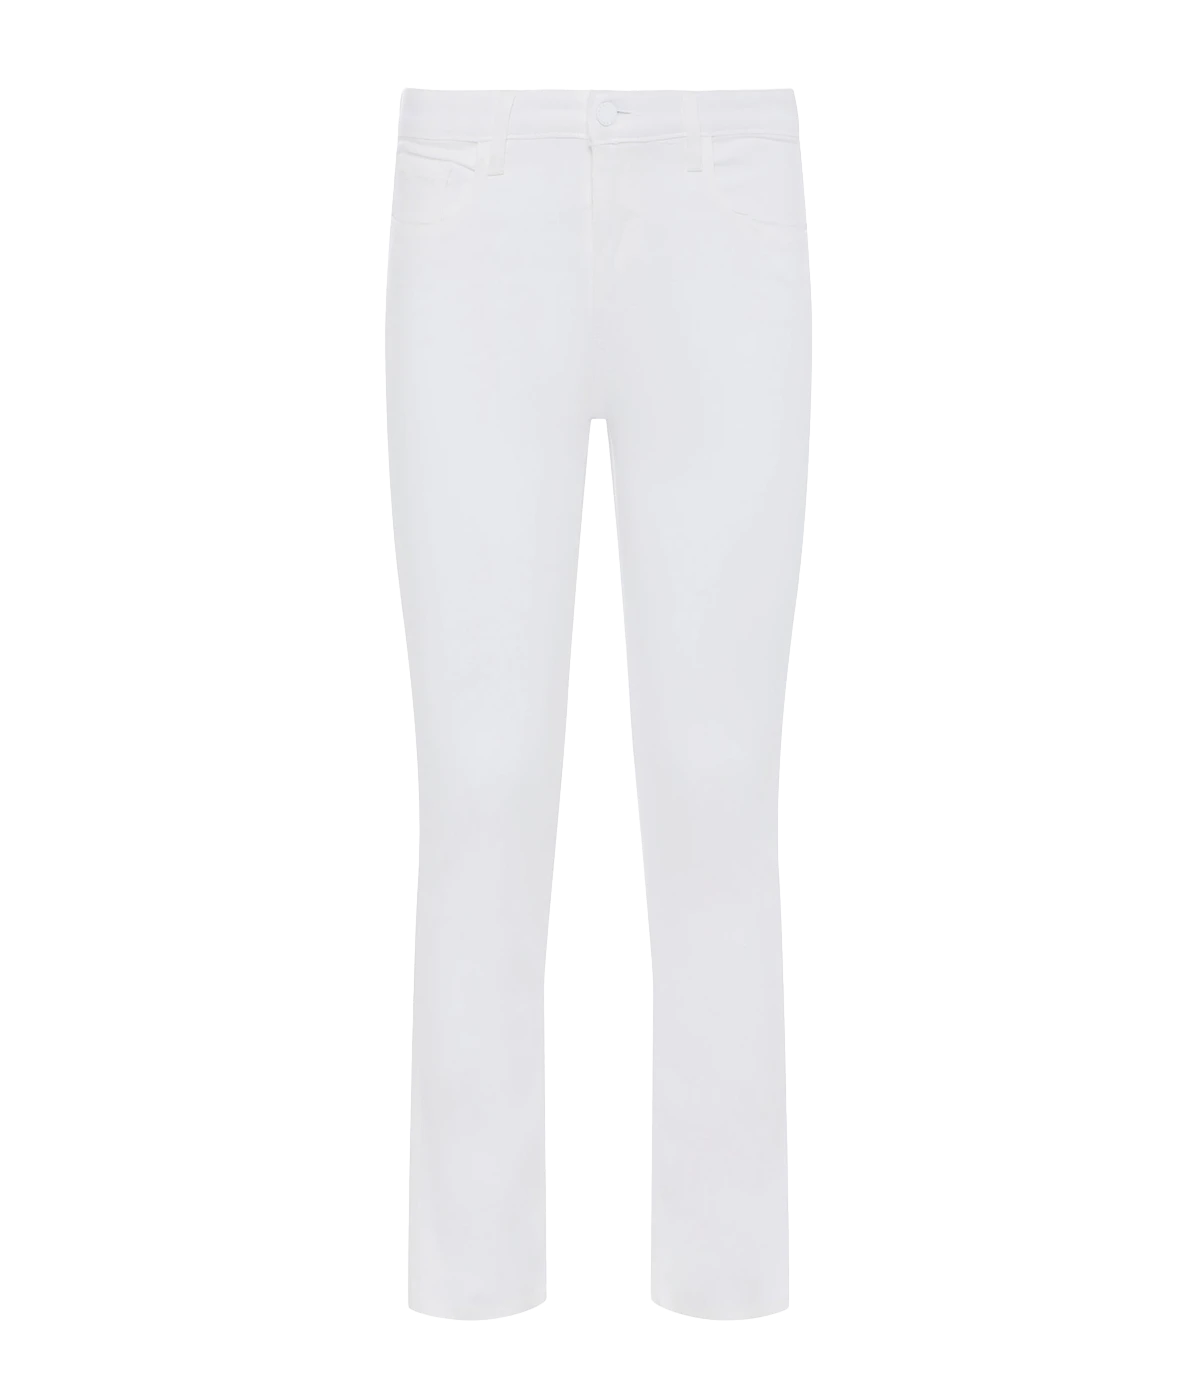 Tati H/R Crop Jean in Blanc Coated